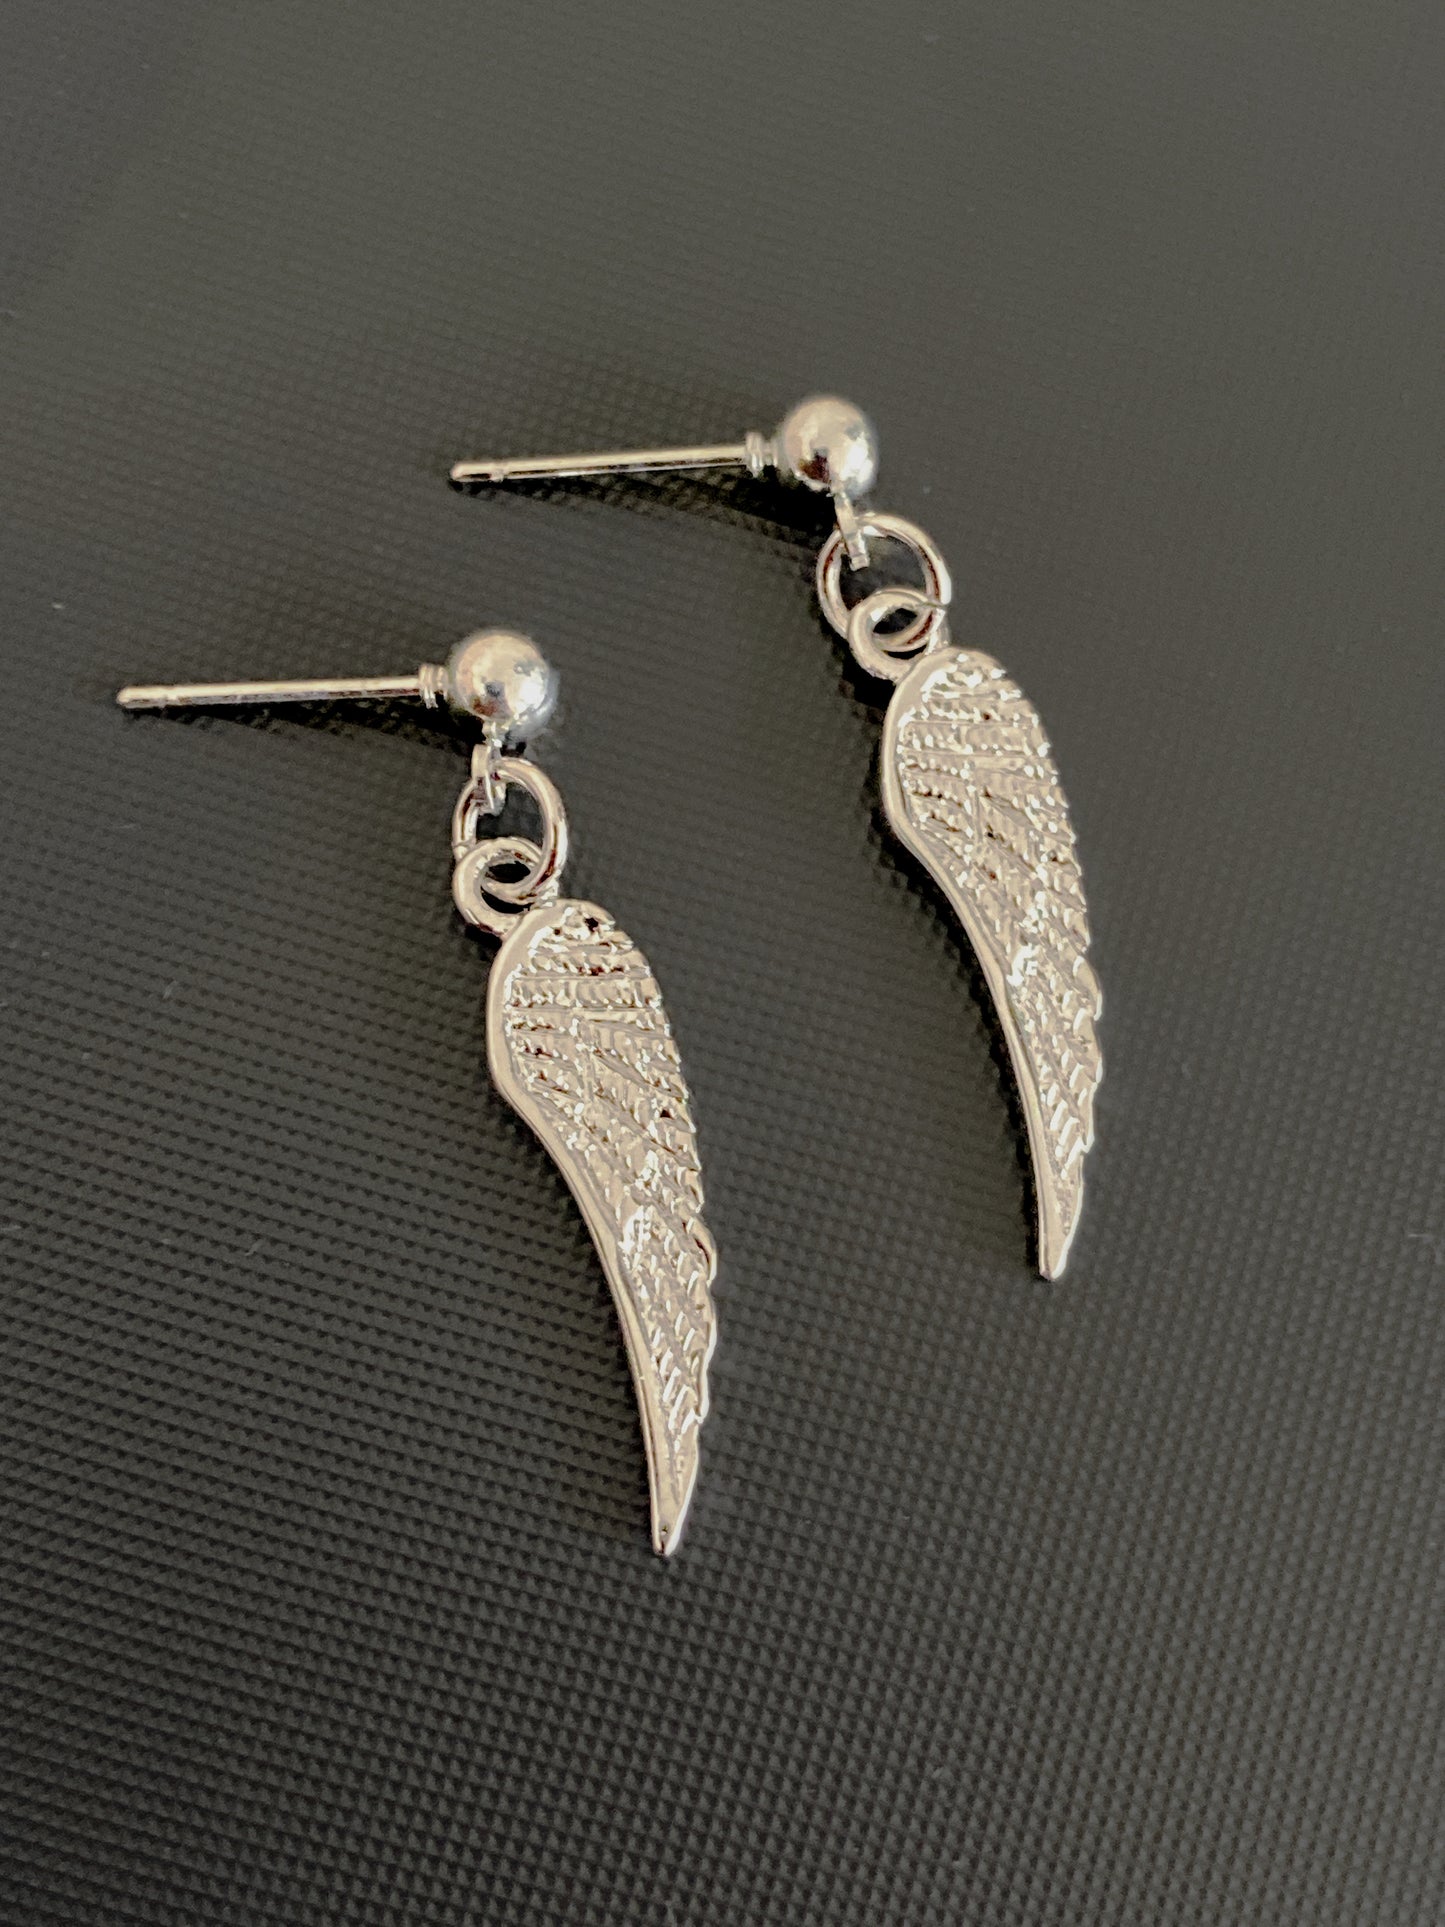 Angel Wings Charm Earring